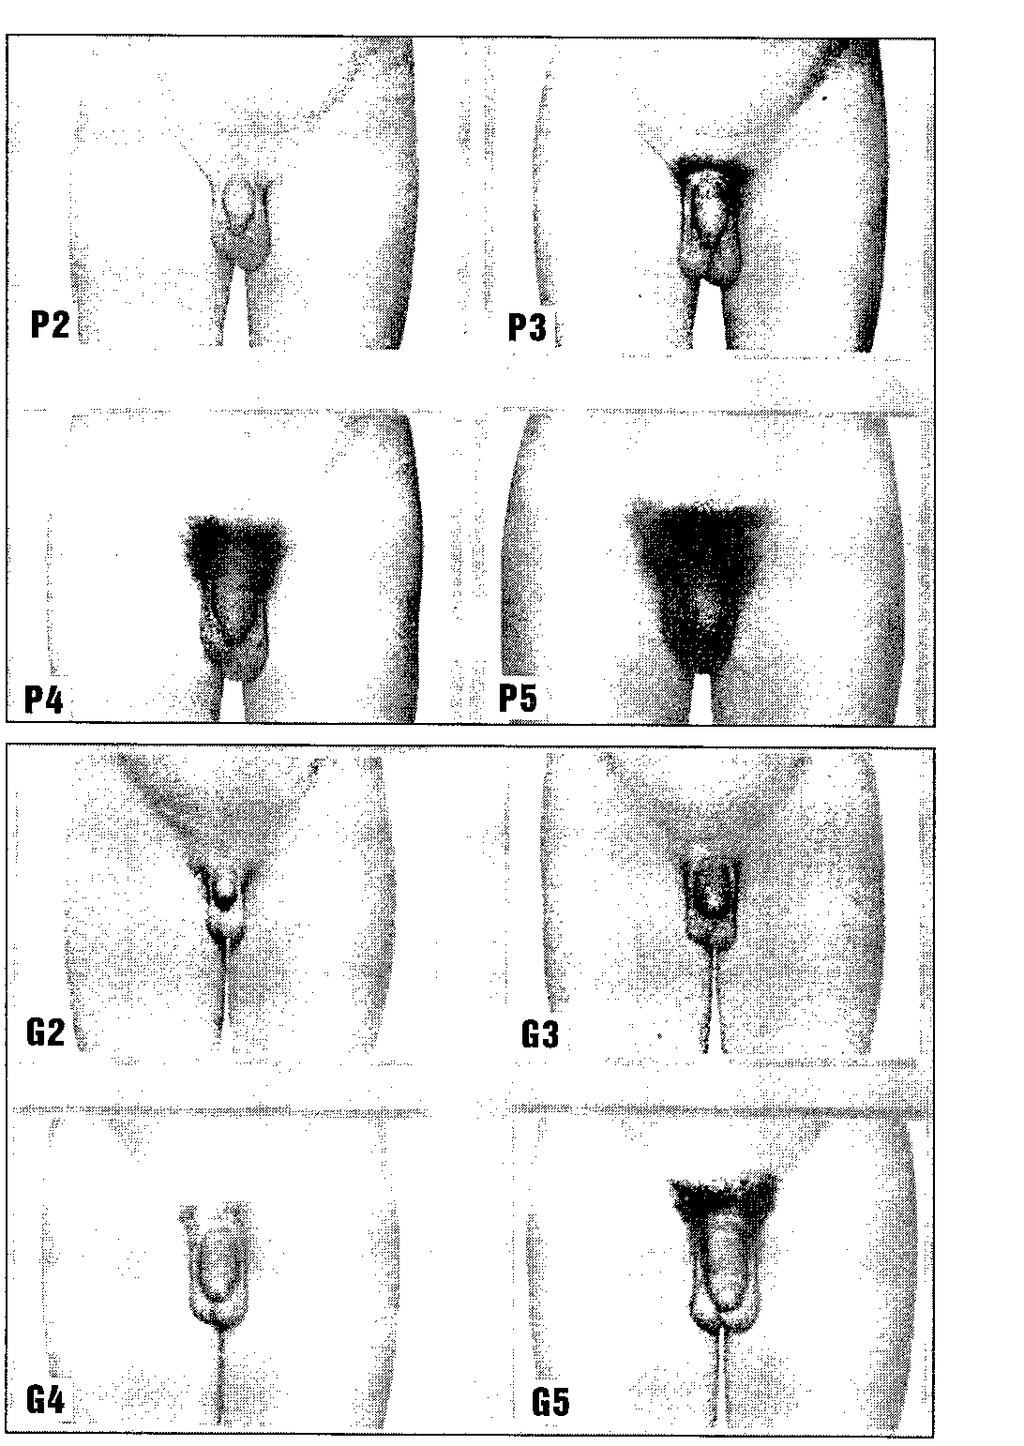 Reprodukční systém chlapců: Růst a maturace testes, penisu a přídatných pohlavních orgánů a rozvoj pubického